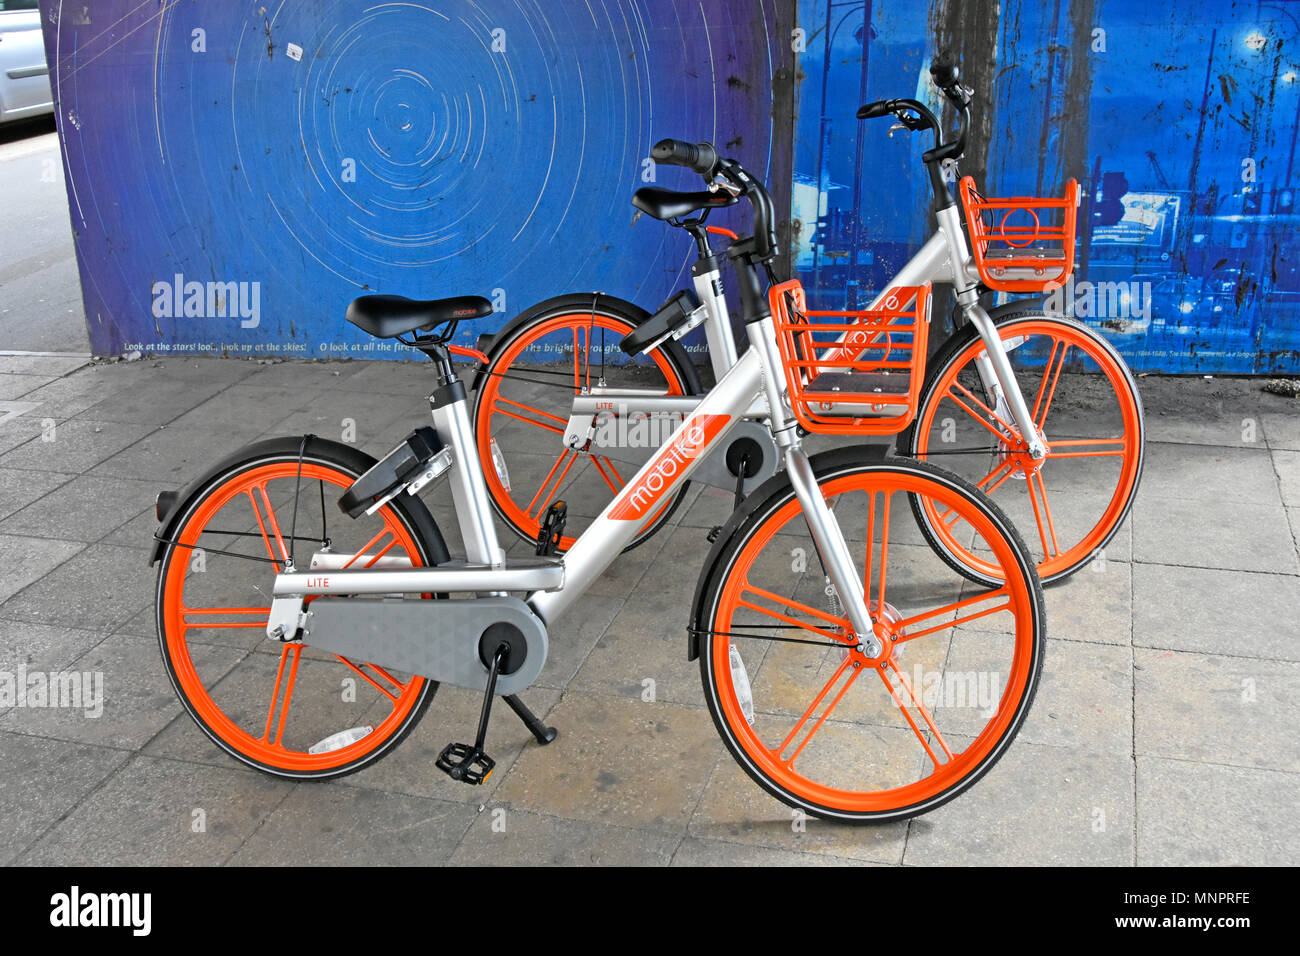 Application pour Smartphone exploités dockless Mobike Lite bike pour voitures de la Chine d'après location de vélos parking aléatoire d'affaires en attente de réutilisation Stratford London UK Banque D'Images